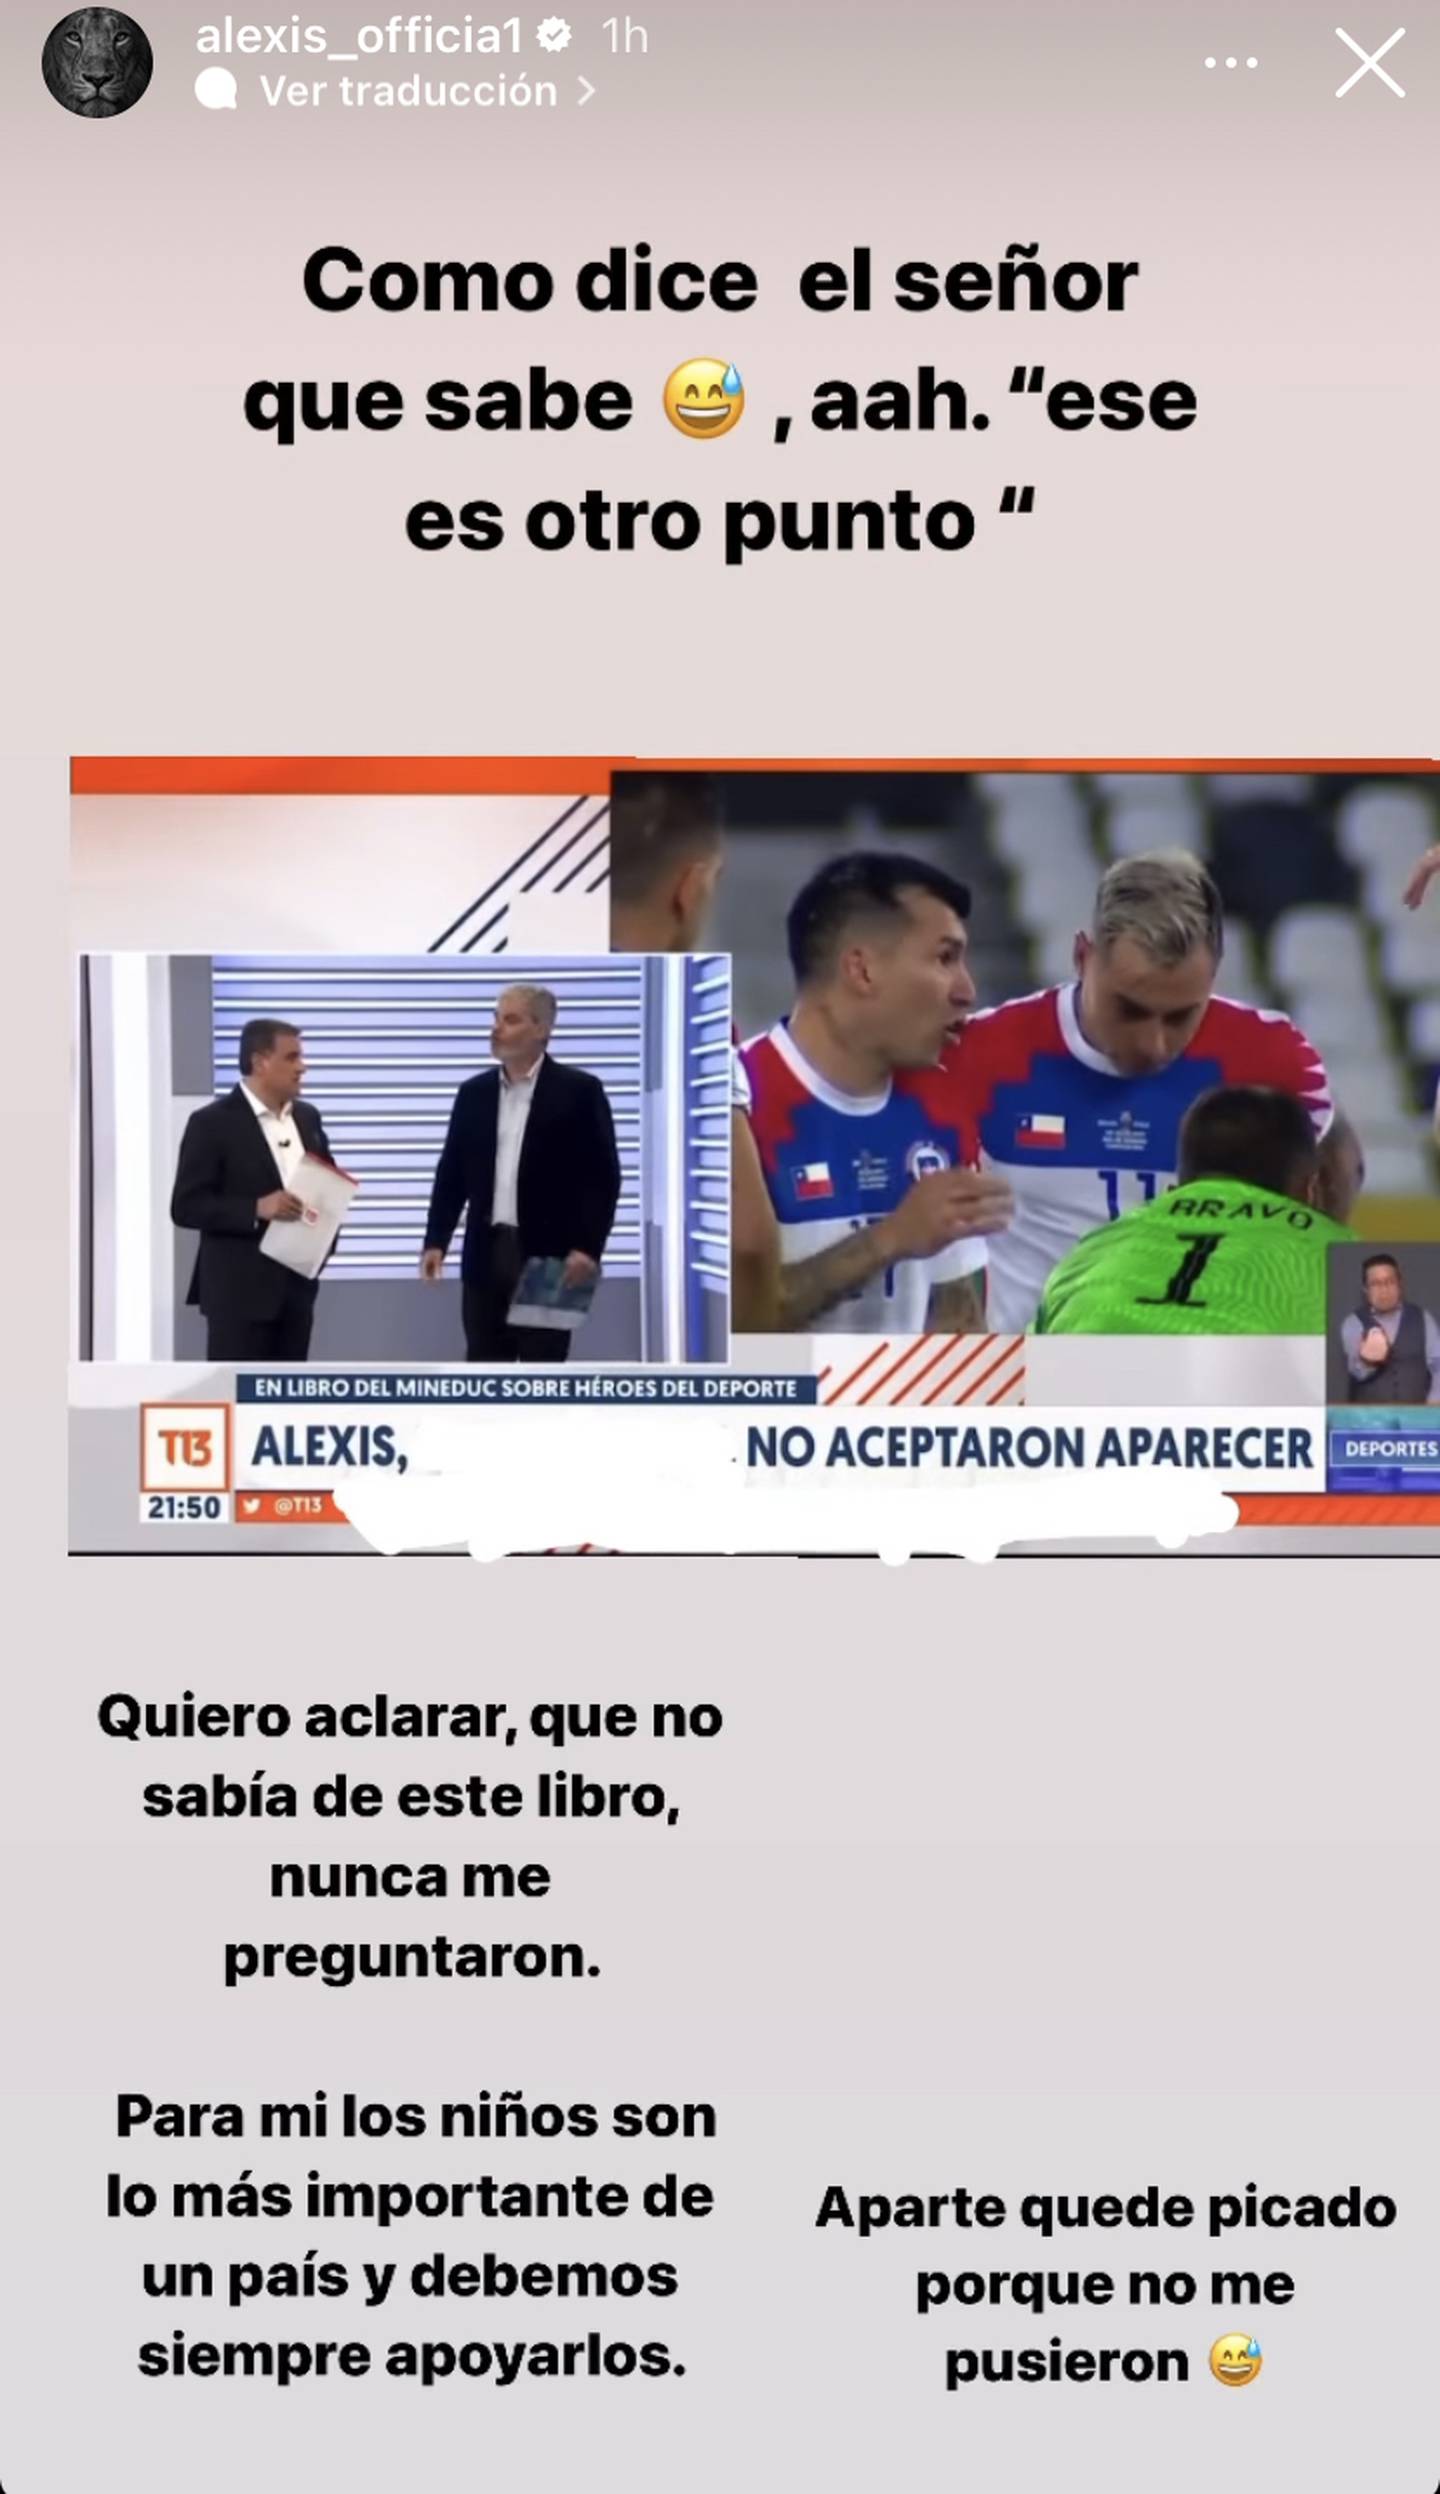 Historia de Alexis Sánchez | Instagram